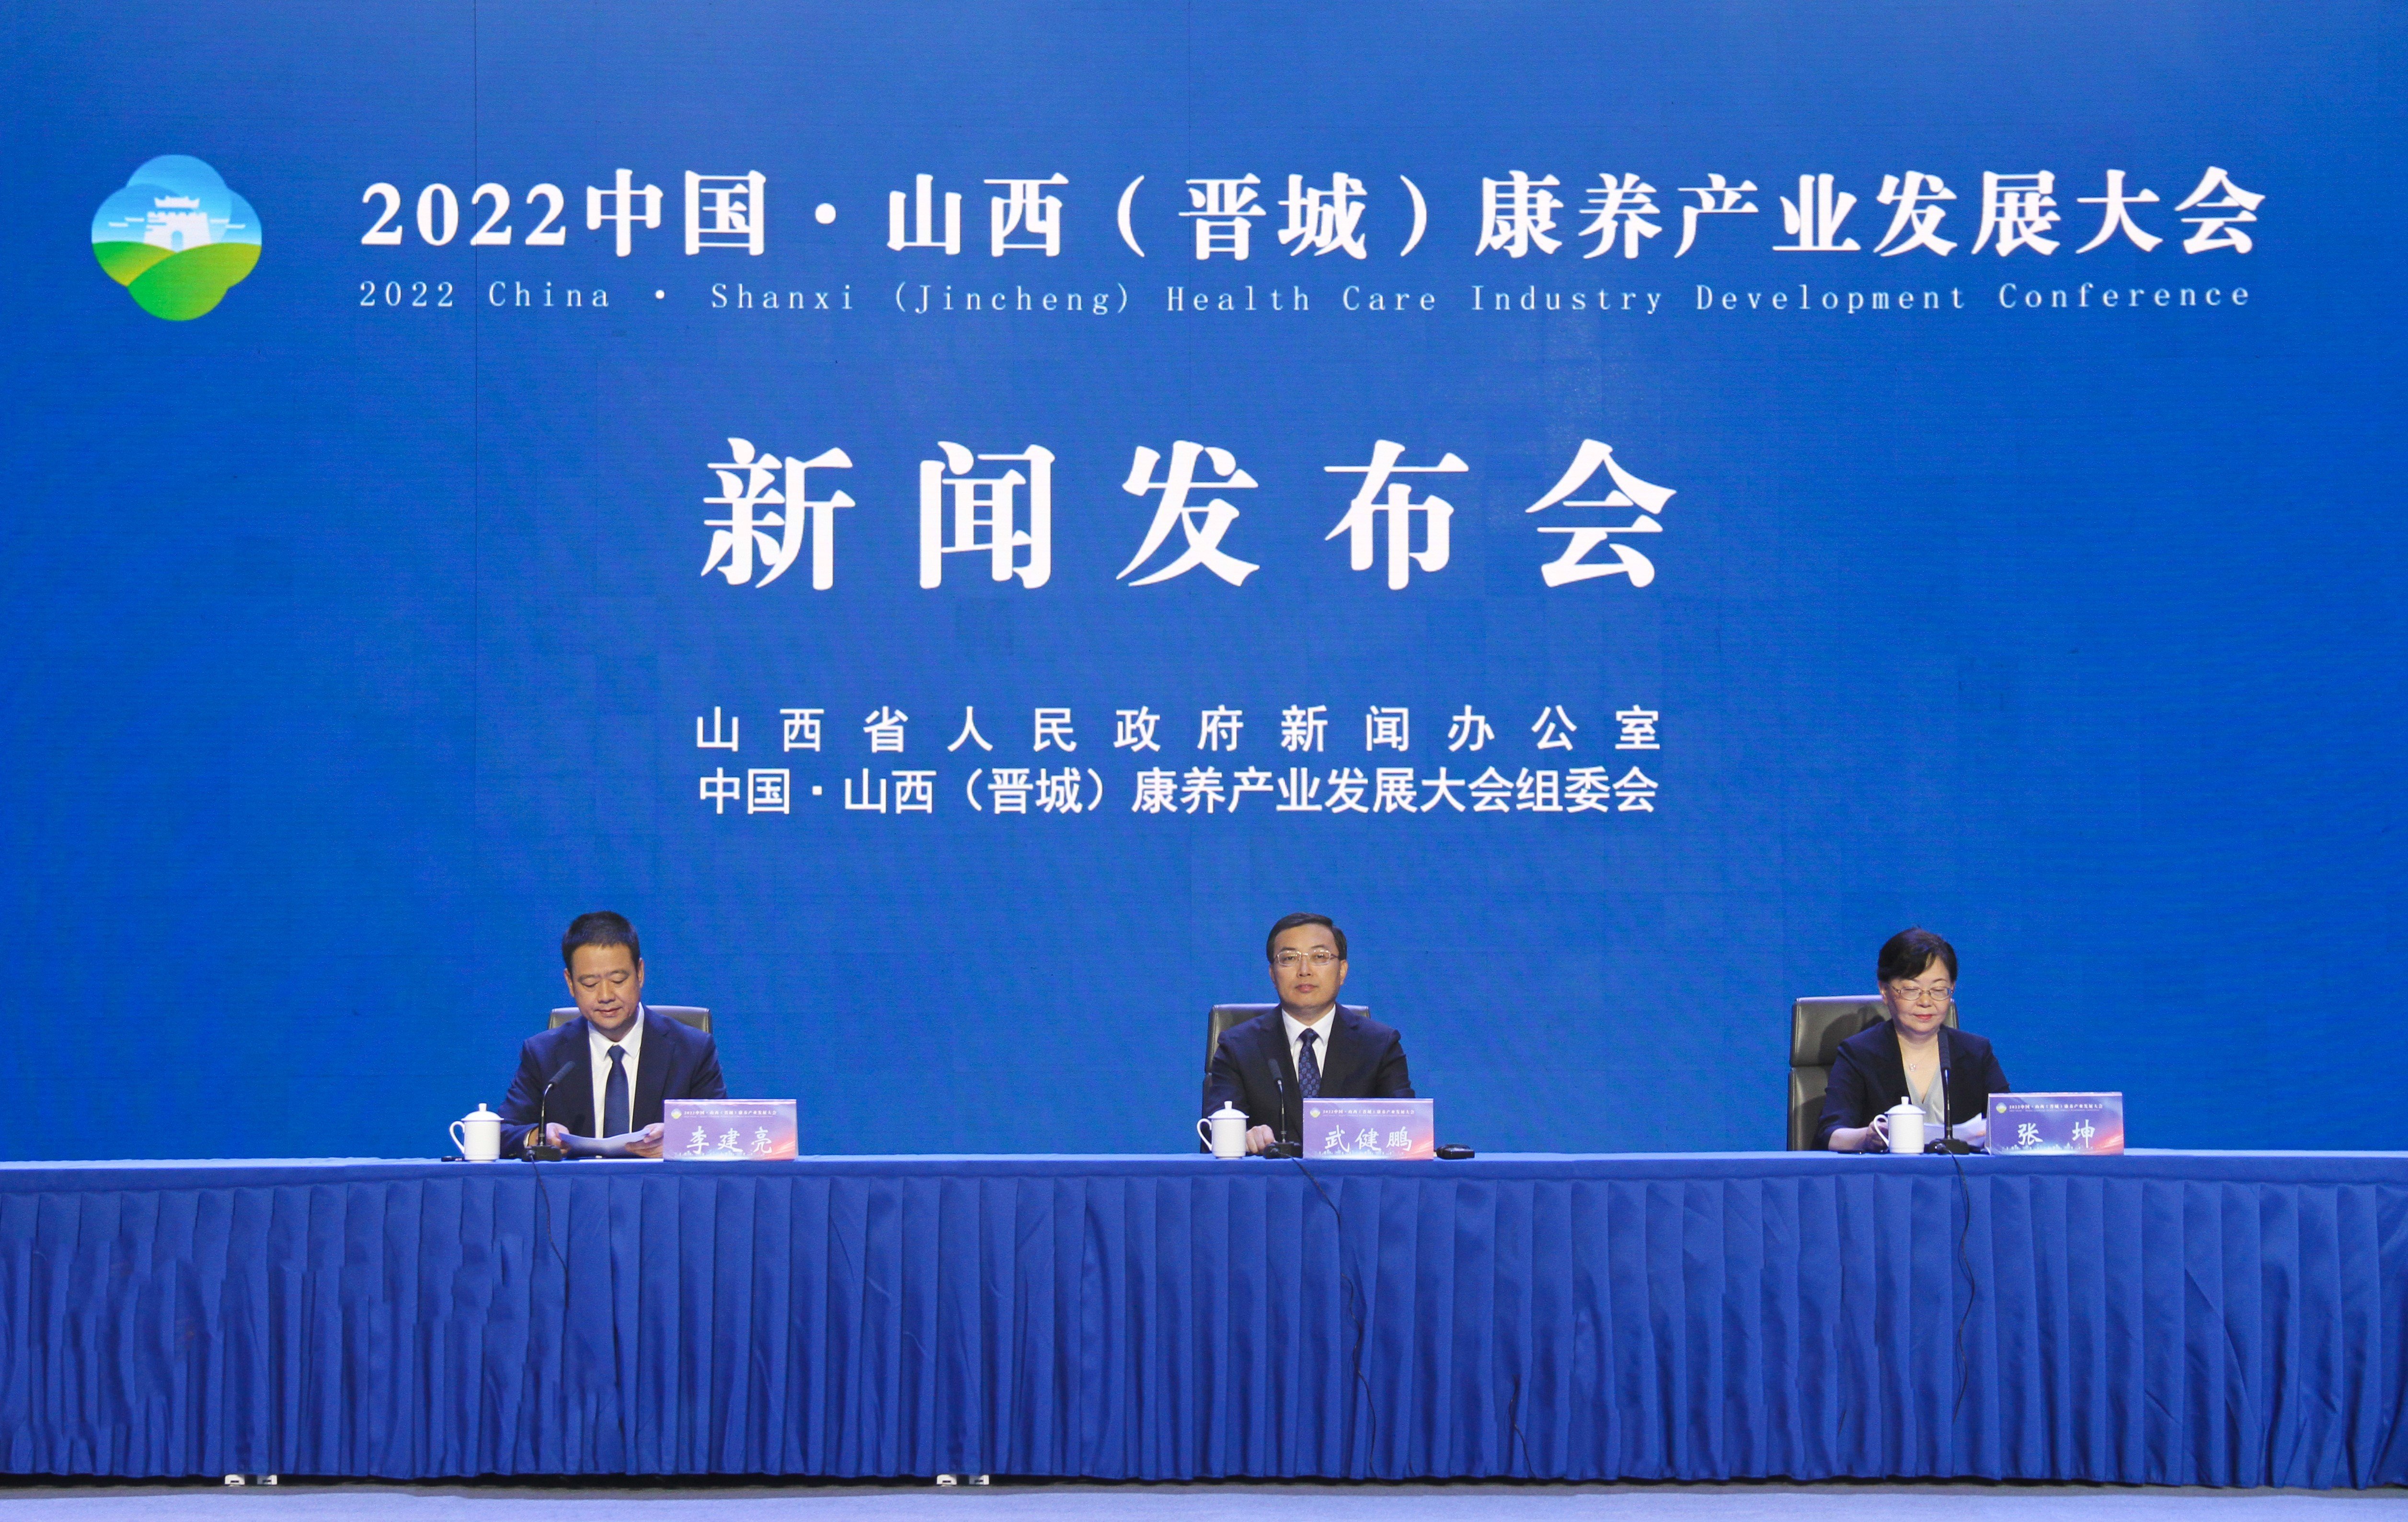 相约太行明珠！2022中国·山西（晋城）康养产业发展大会9月14日启幕